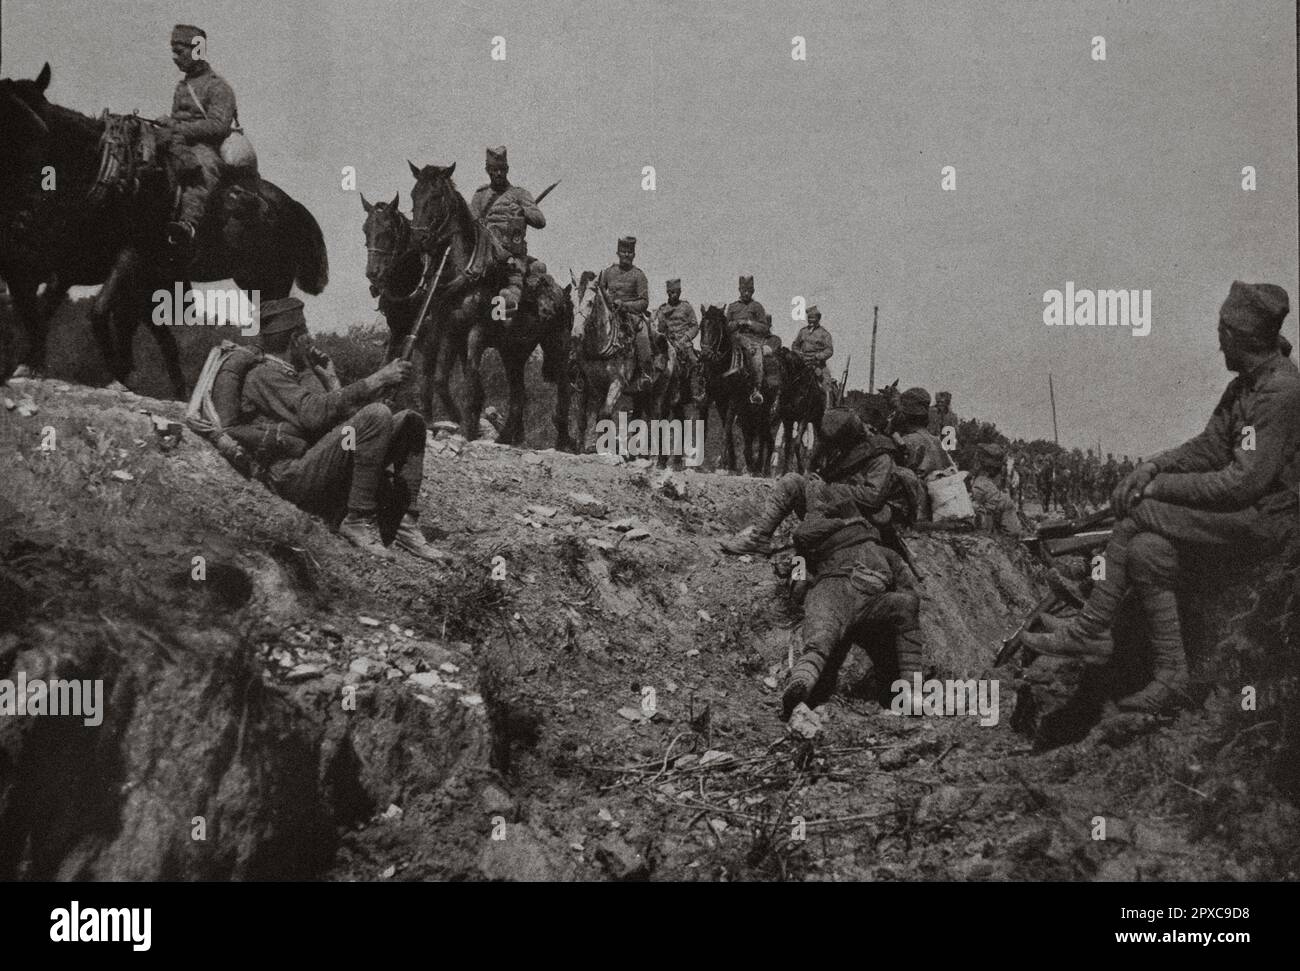 Prima guerra mondiale La resistenza serba. Le truppe serbe, riportate dal confine bulgaro, si oppongono agli austro-tedeschi provenienti dal nord. Foto Stock